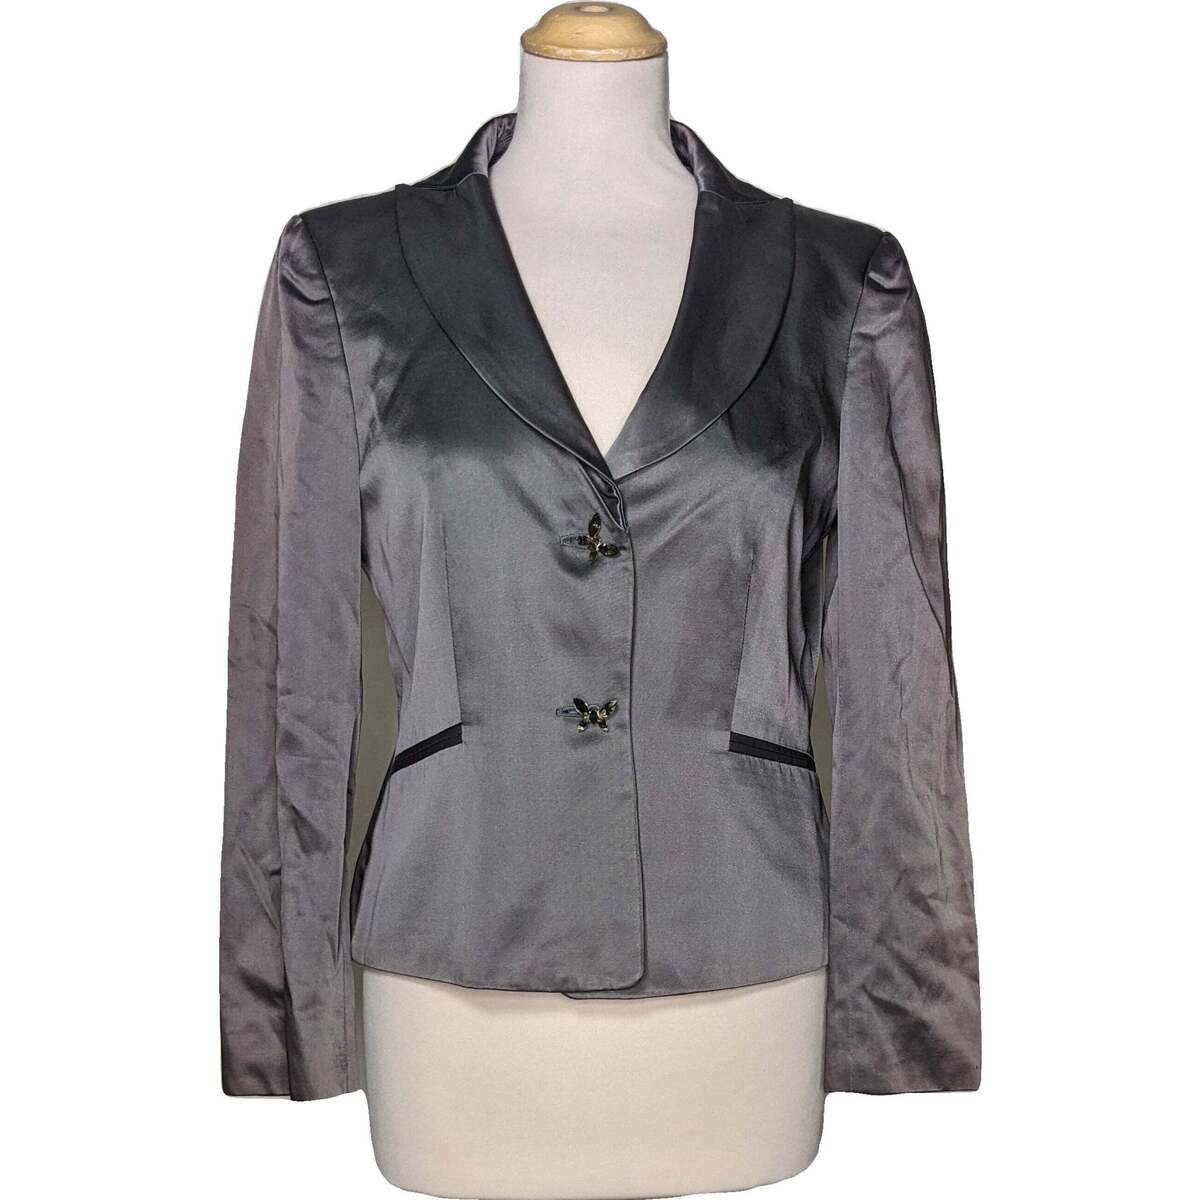 Vêtements Femme Connectez vous ou créez un compte avec blazer  38 - T2 - M Gris Gris